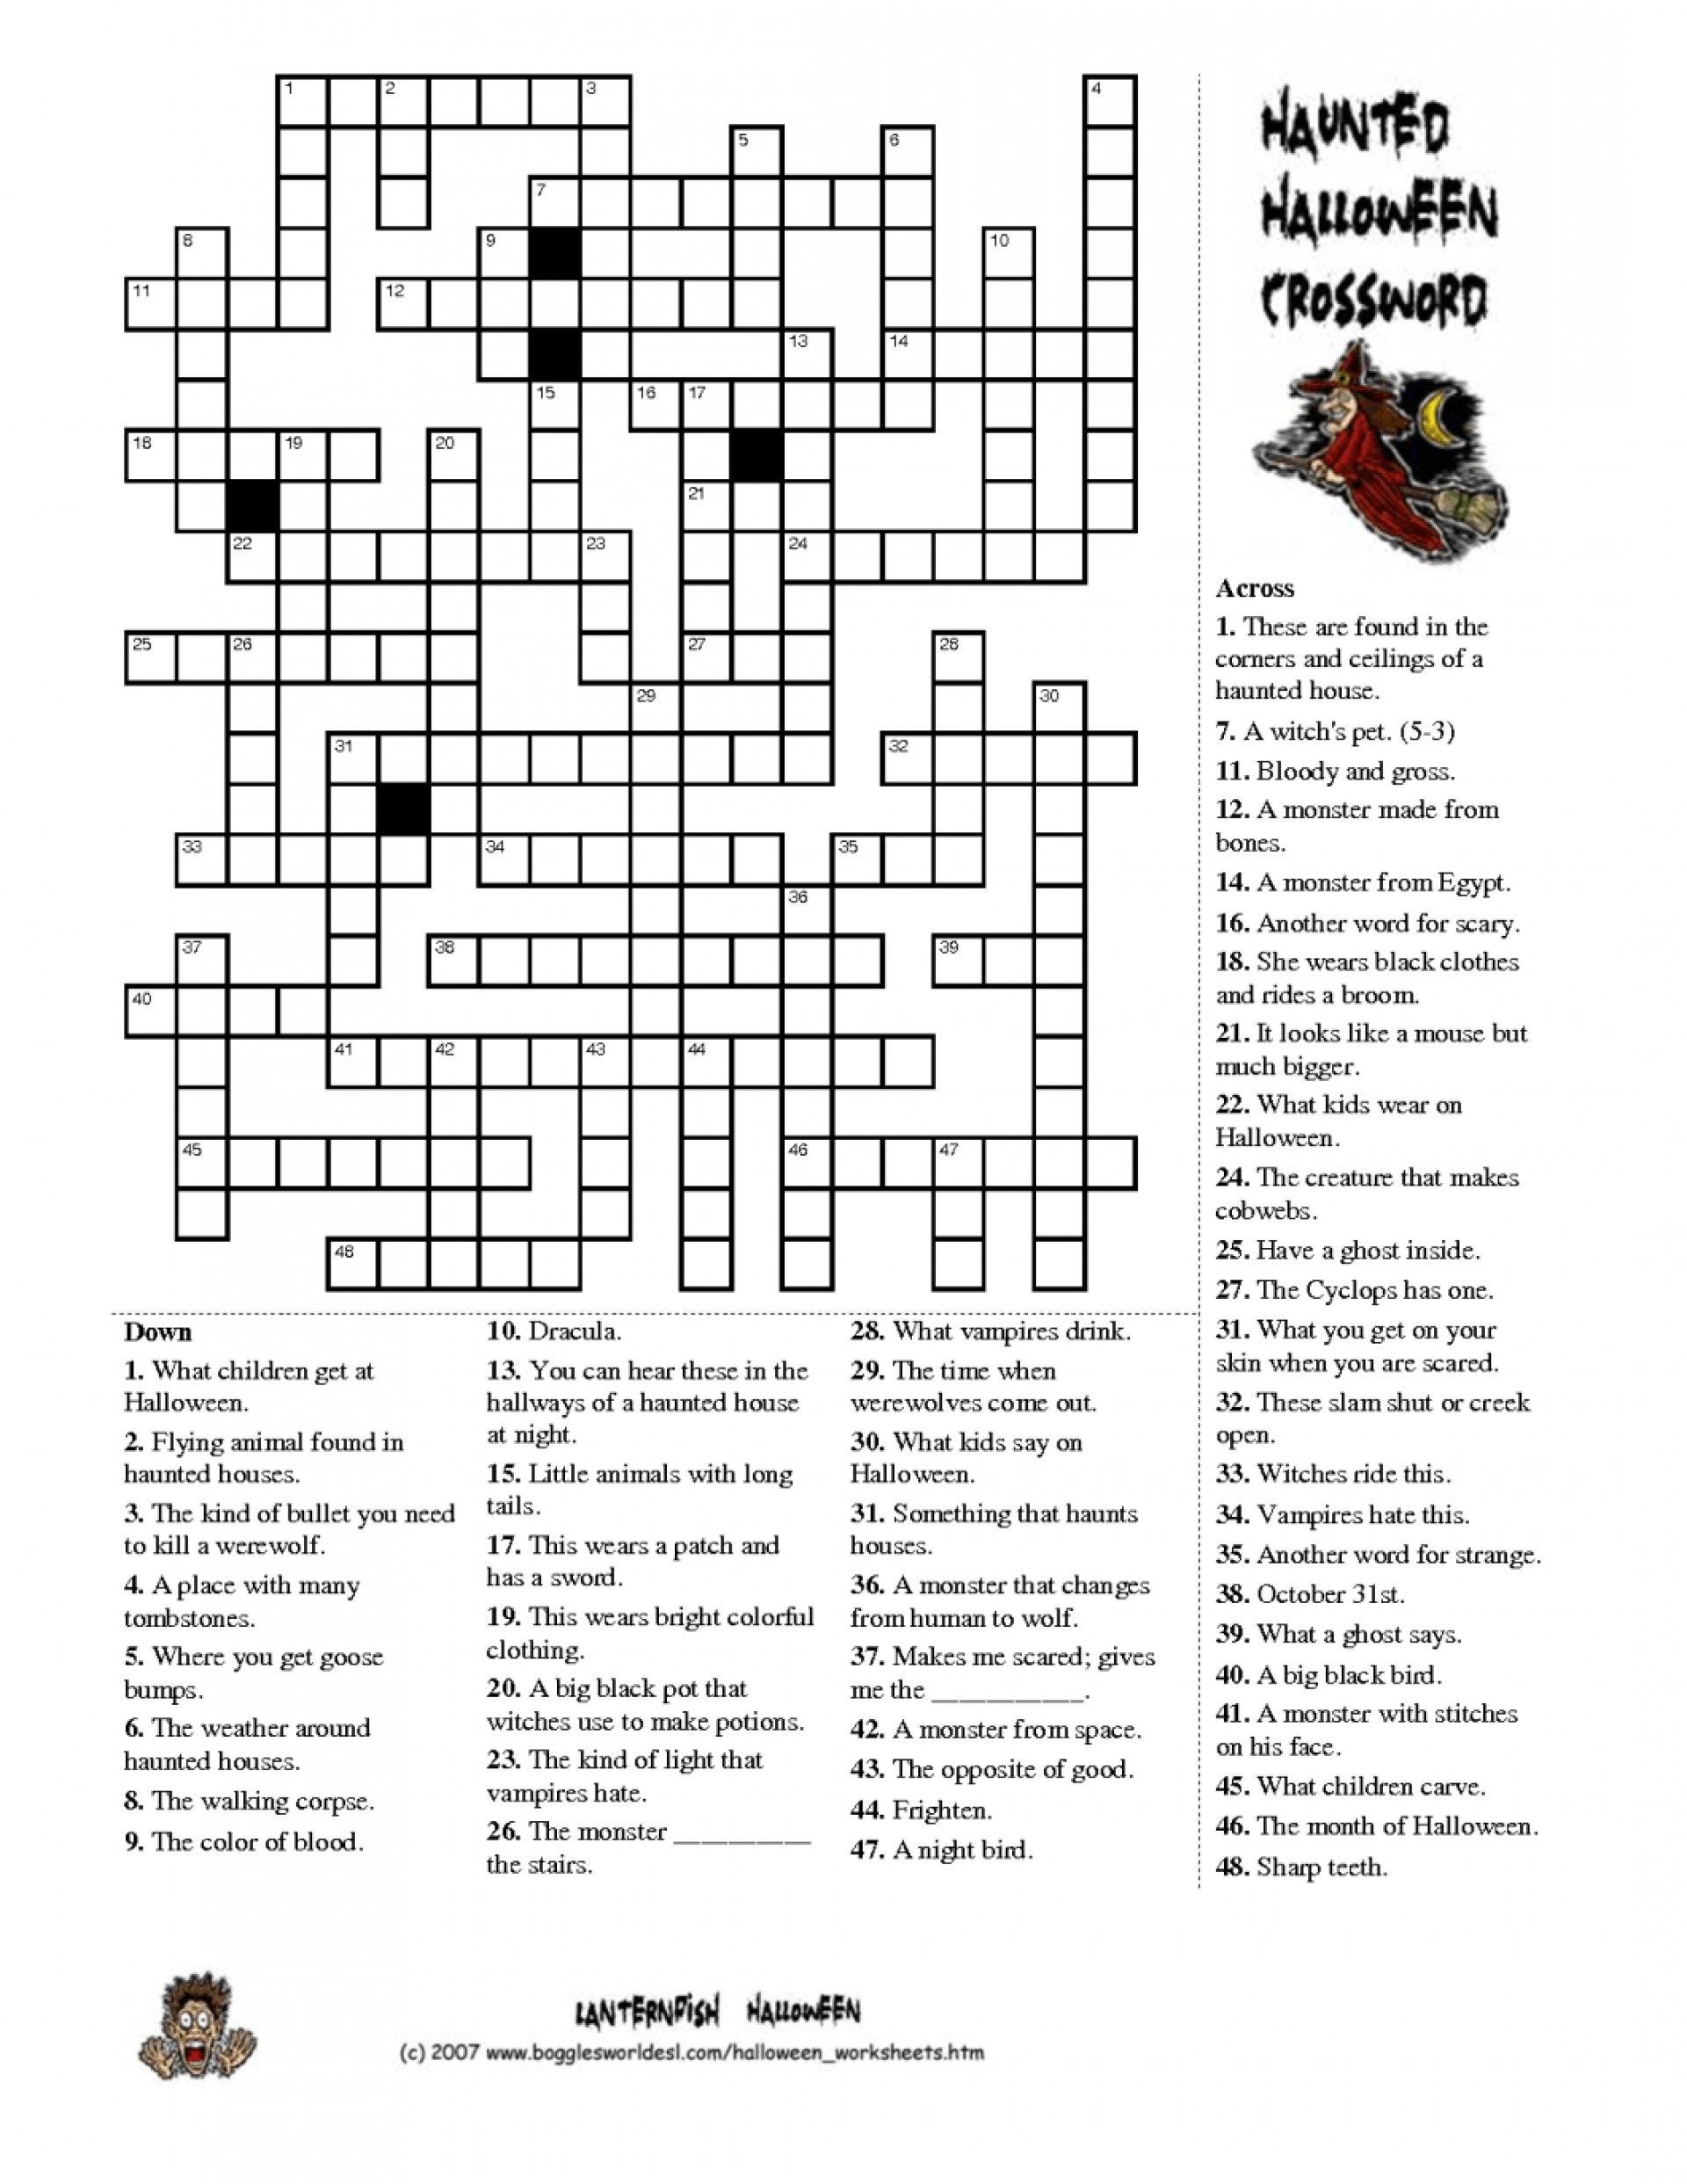 Halloween Crossword Puzzles Free Printable